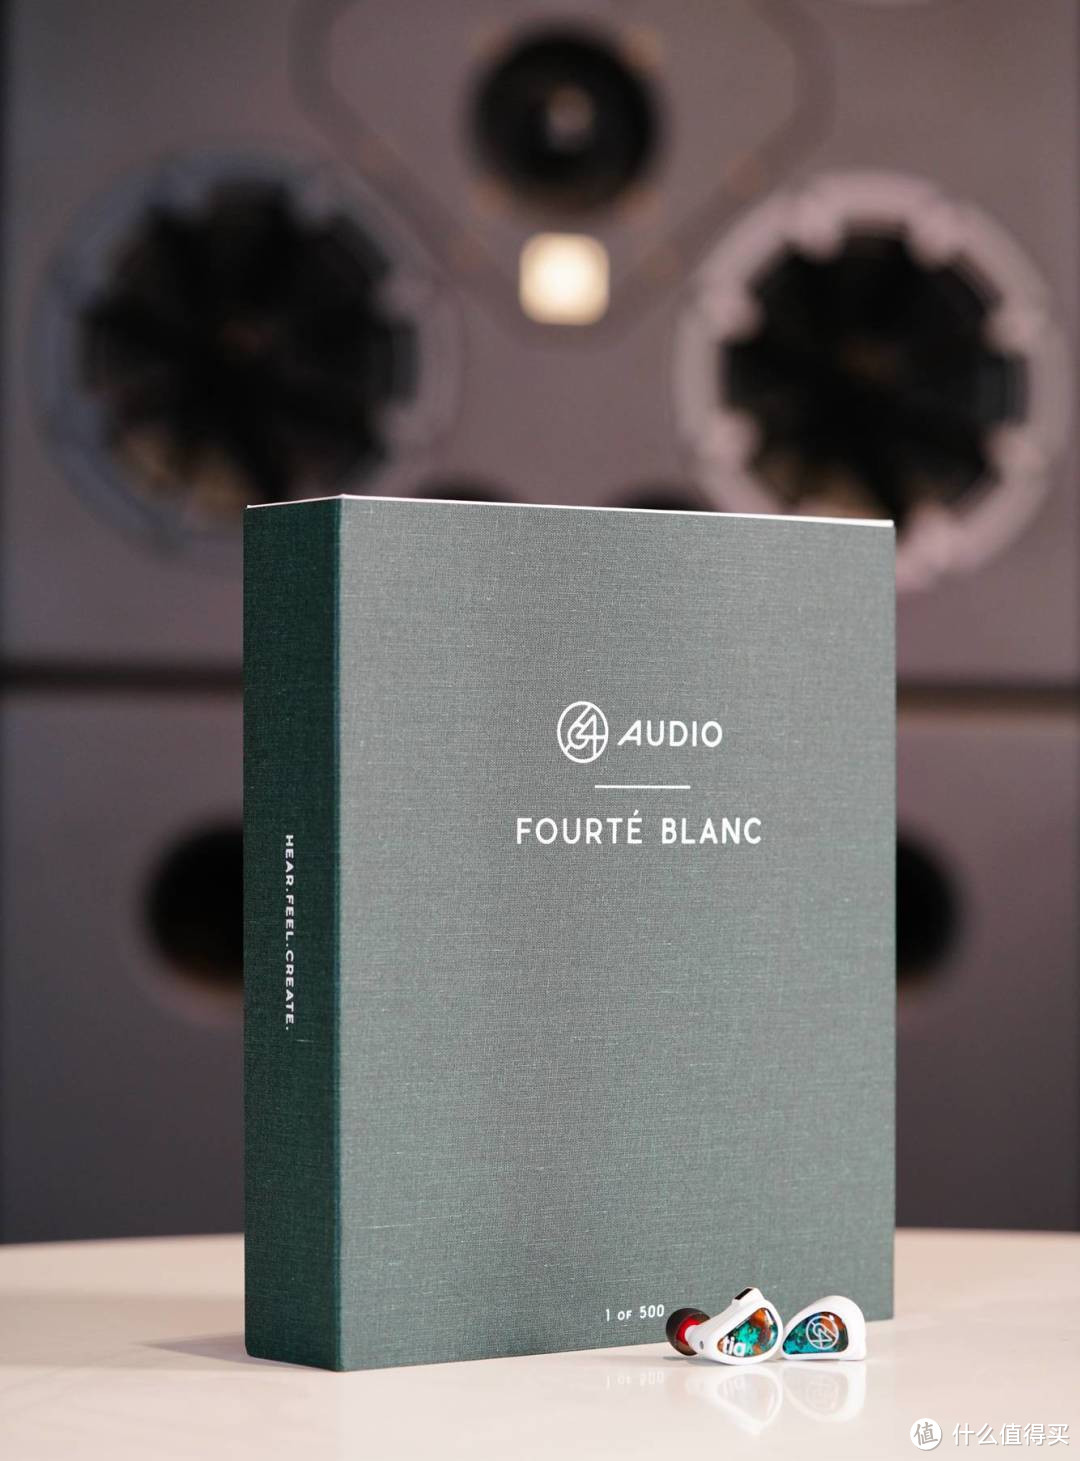 大巧不工 返璞归真——64 Audio新限量旗舰耳塞FOURTÉ BLANC